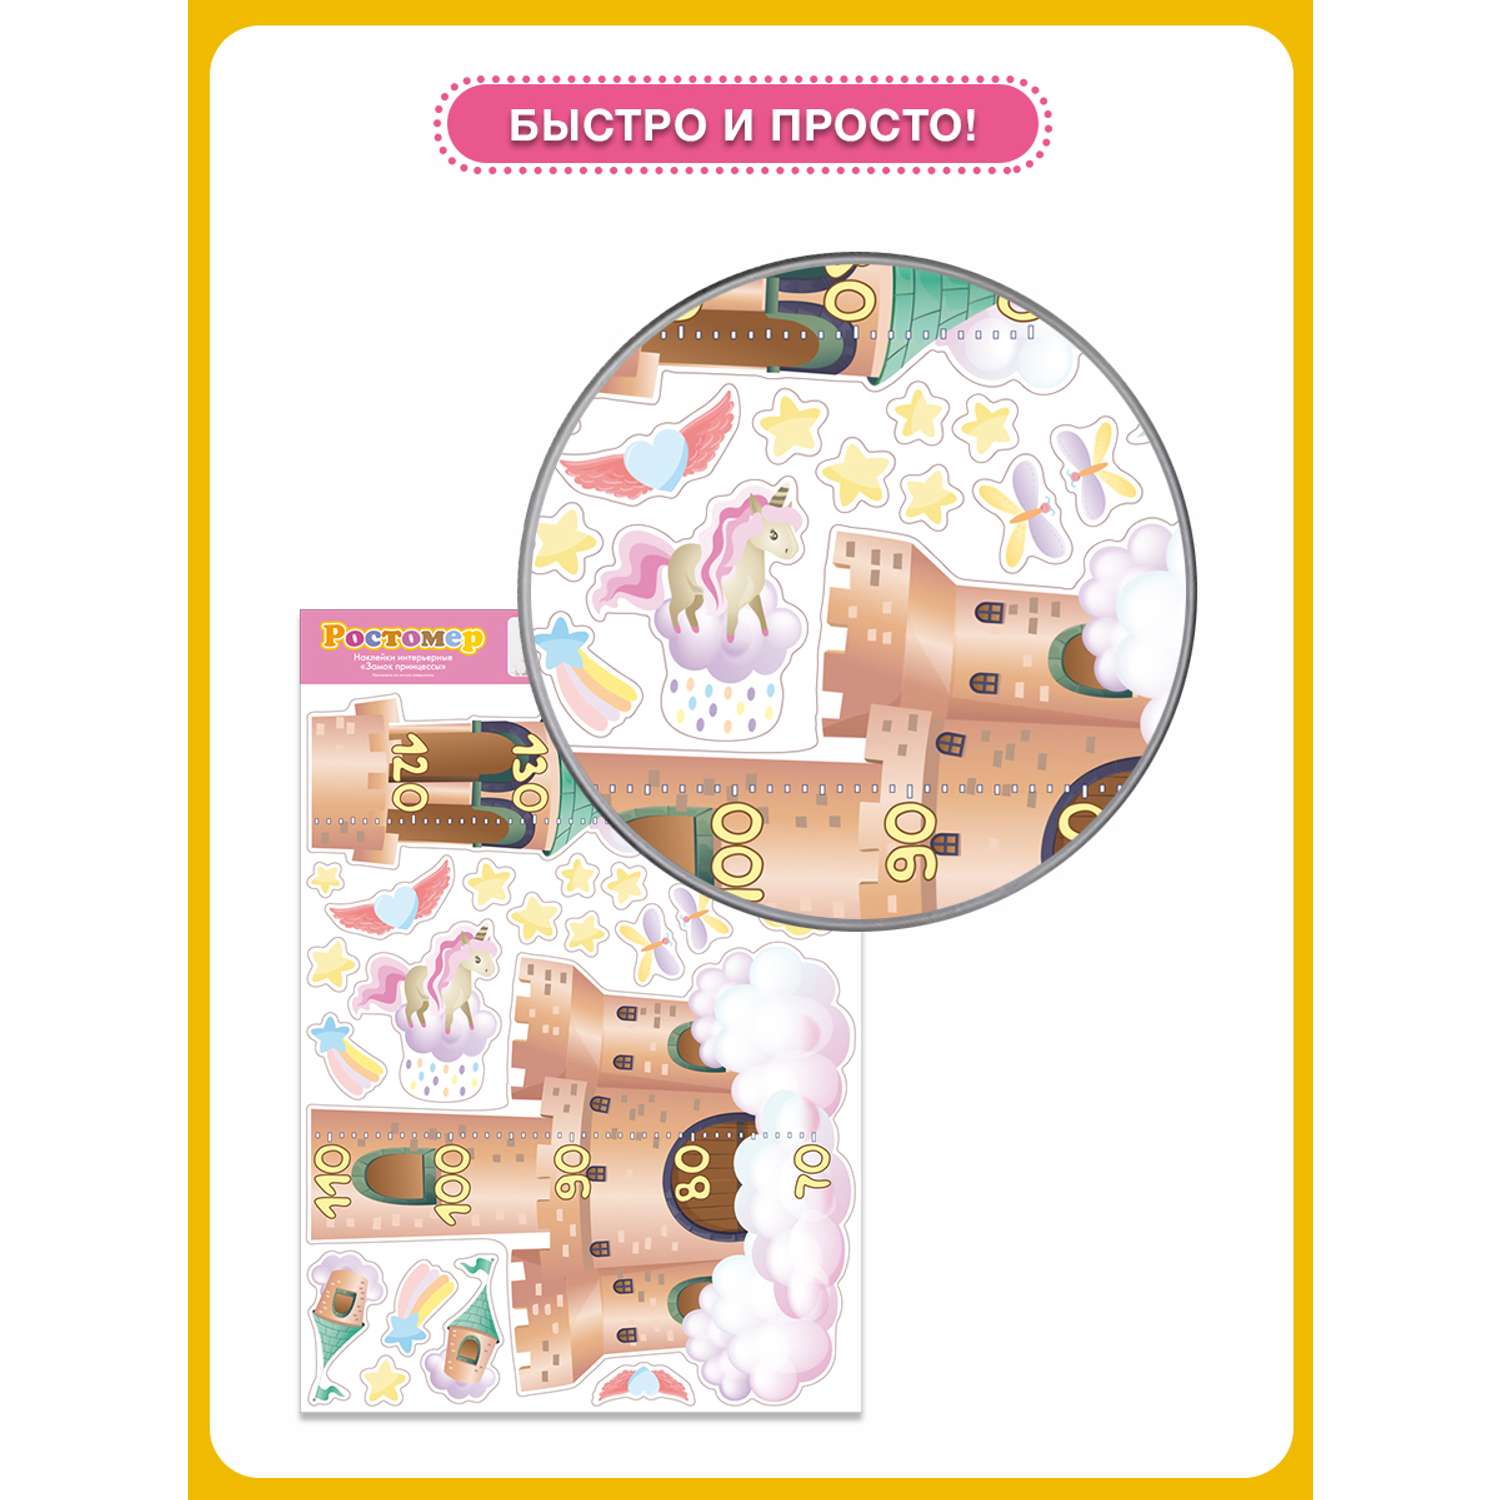 Наклейка ростомер ГК Горчаков в детскую комнату дочке с рисунком замок принцессы для декора - фото 4